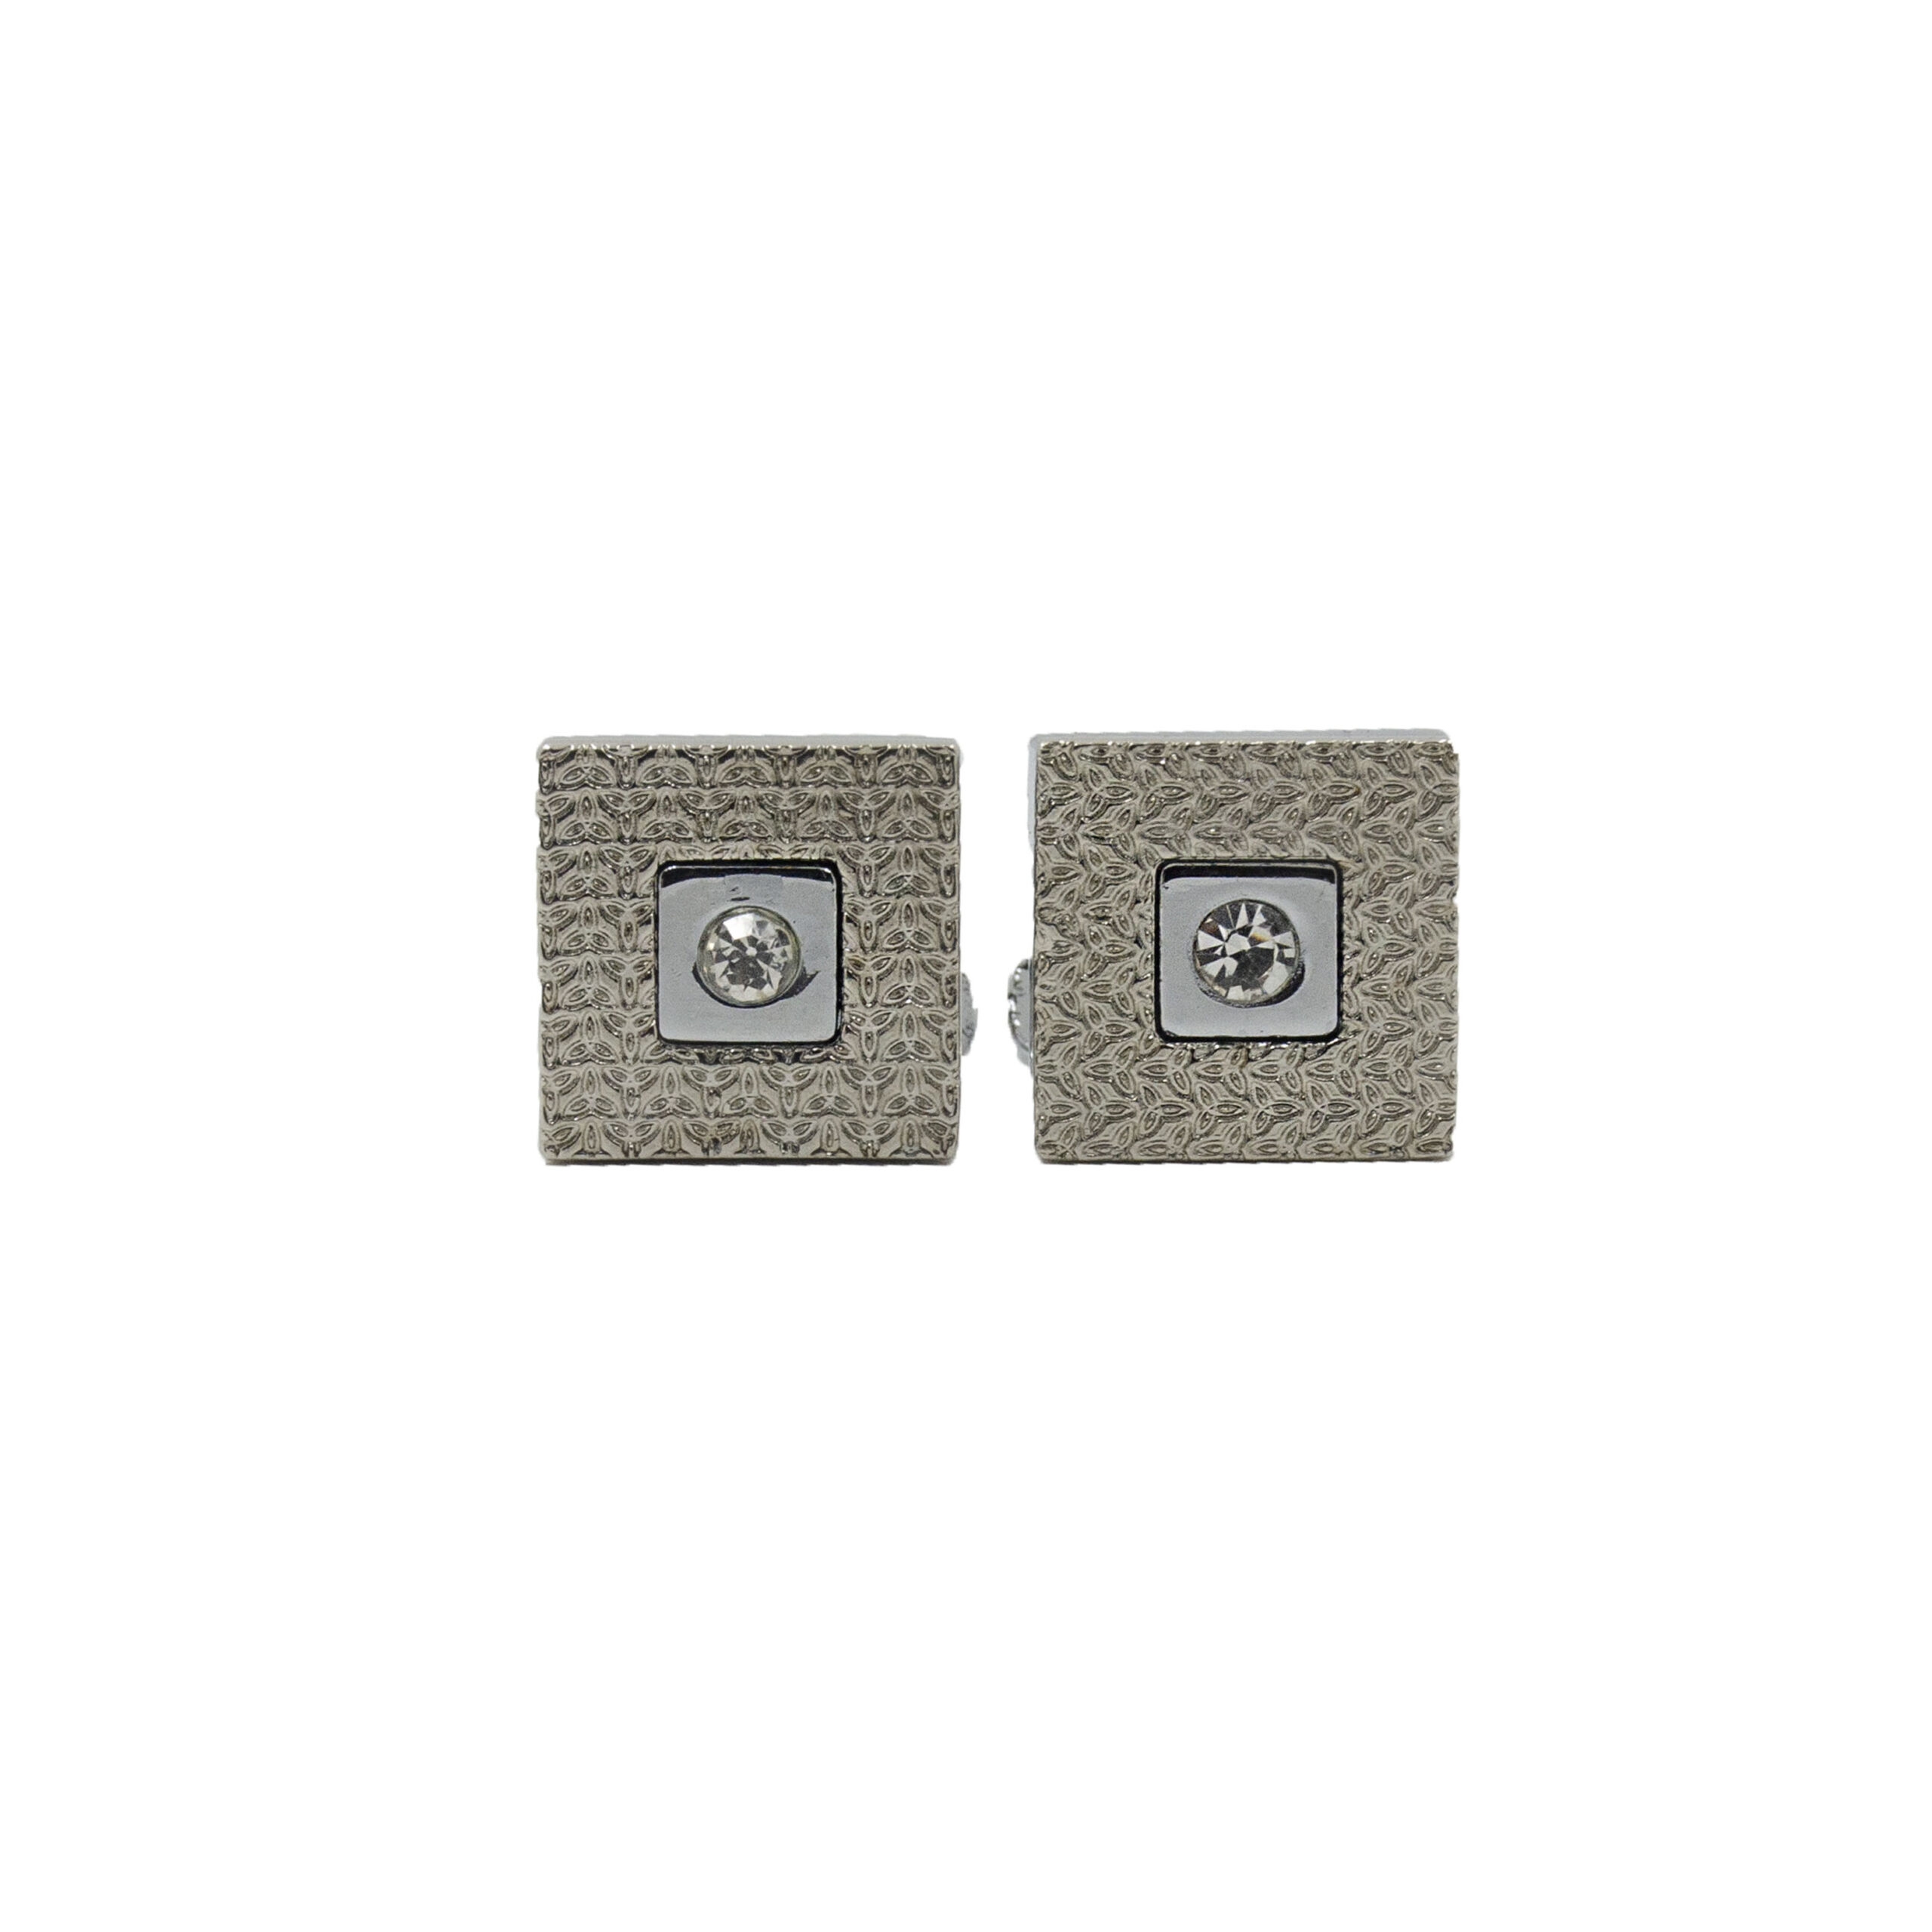 Cufflers Designer Cufflinks with Free Gift Box – Silver & White Square Design – CU-4009